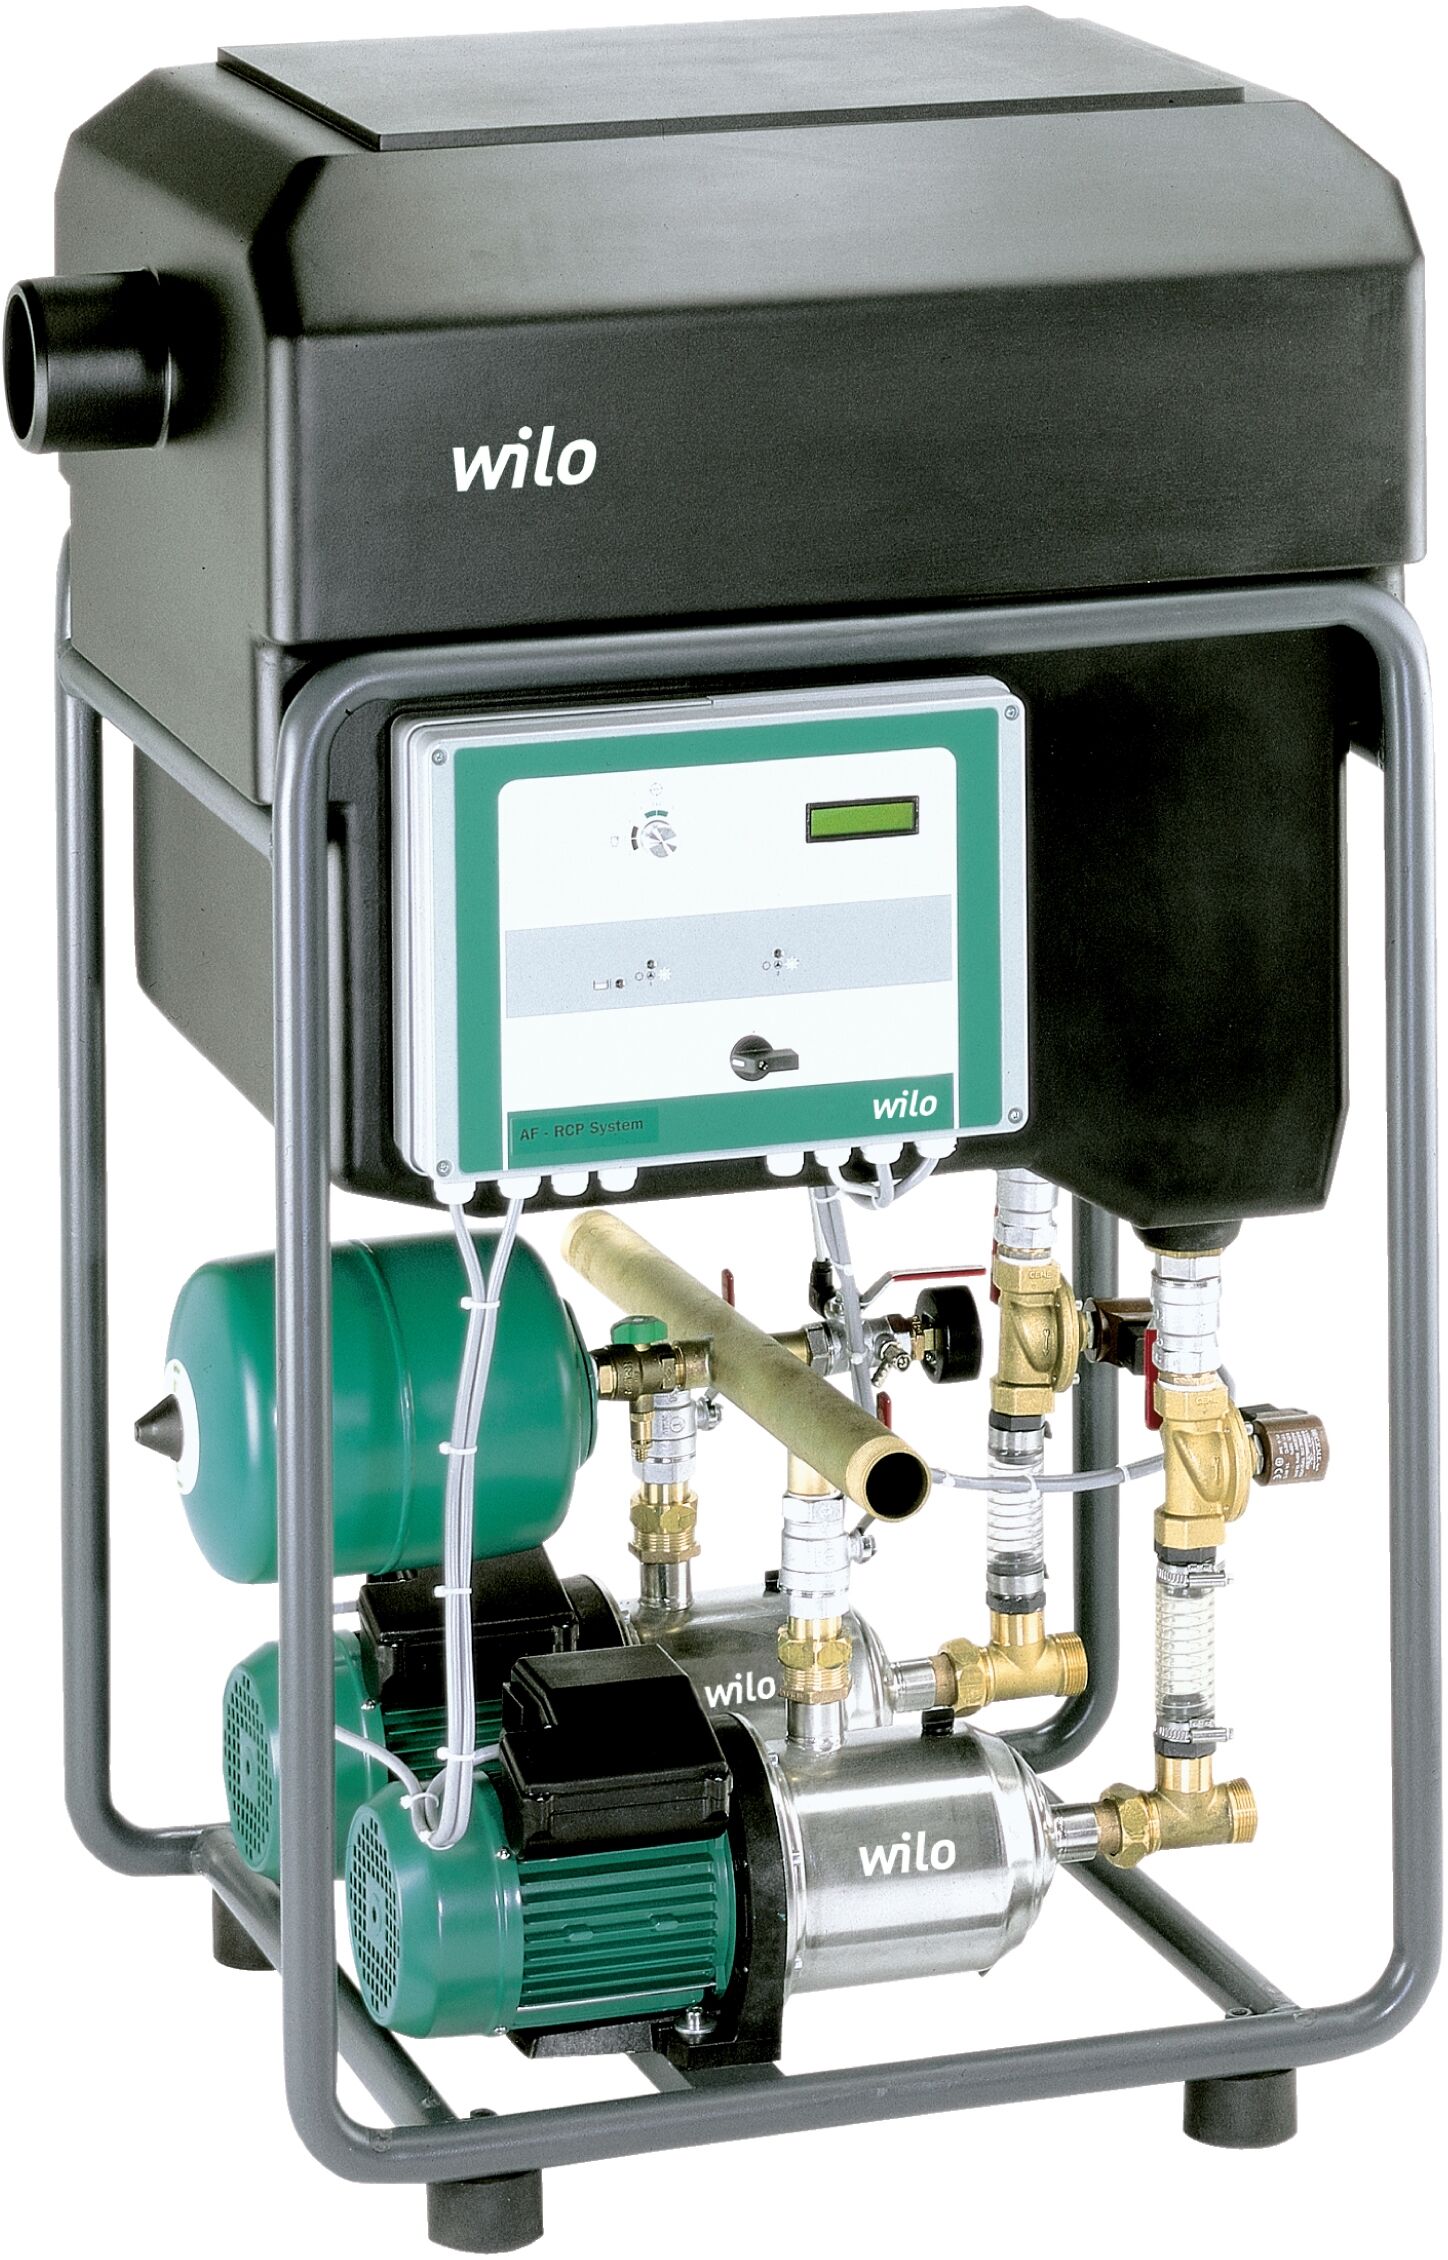 Wilo Regenwasser-Nutzungsanlage 2531207 605, 1,1 kW, 230 V